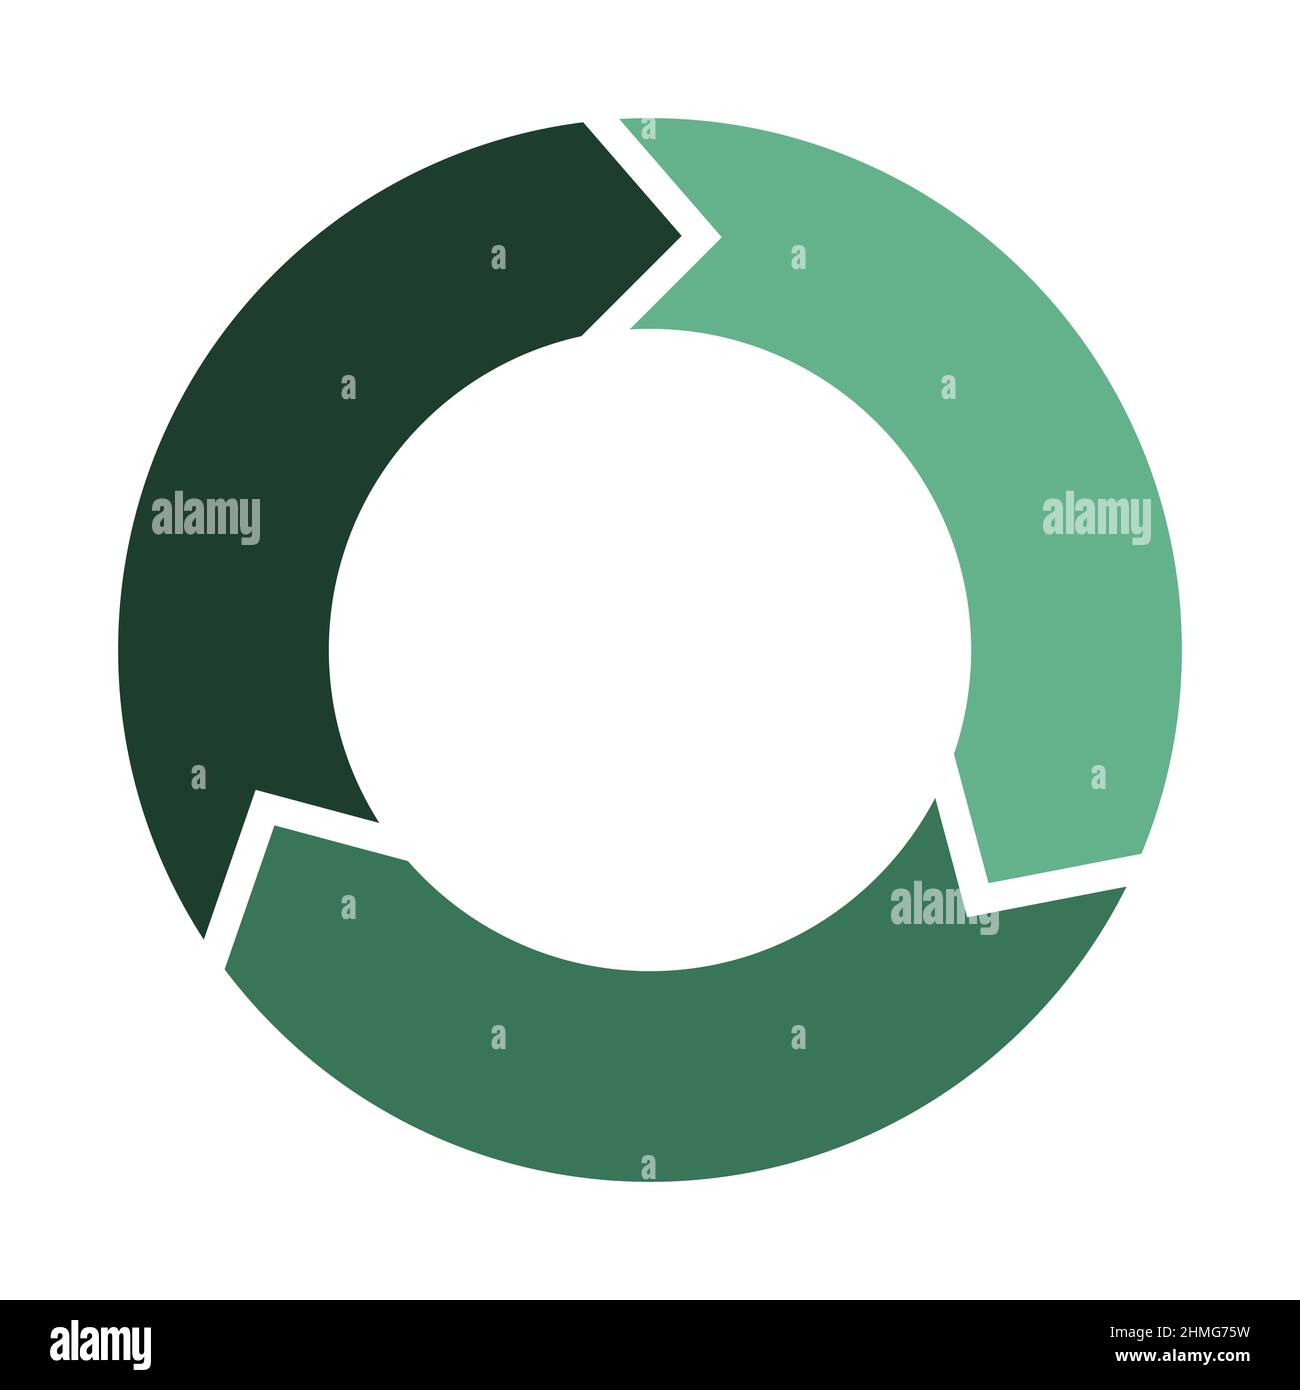 Kreis mit 3 Pfeilen erneuern und aktualisieren. Drei Elemente bilden ein kreisförmiges Symbol. Grüne Farbe Infografik Diagramm Vektor Illustration. Stock Vektor